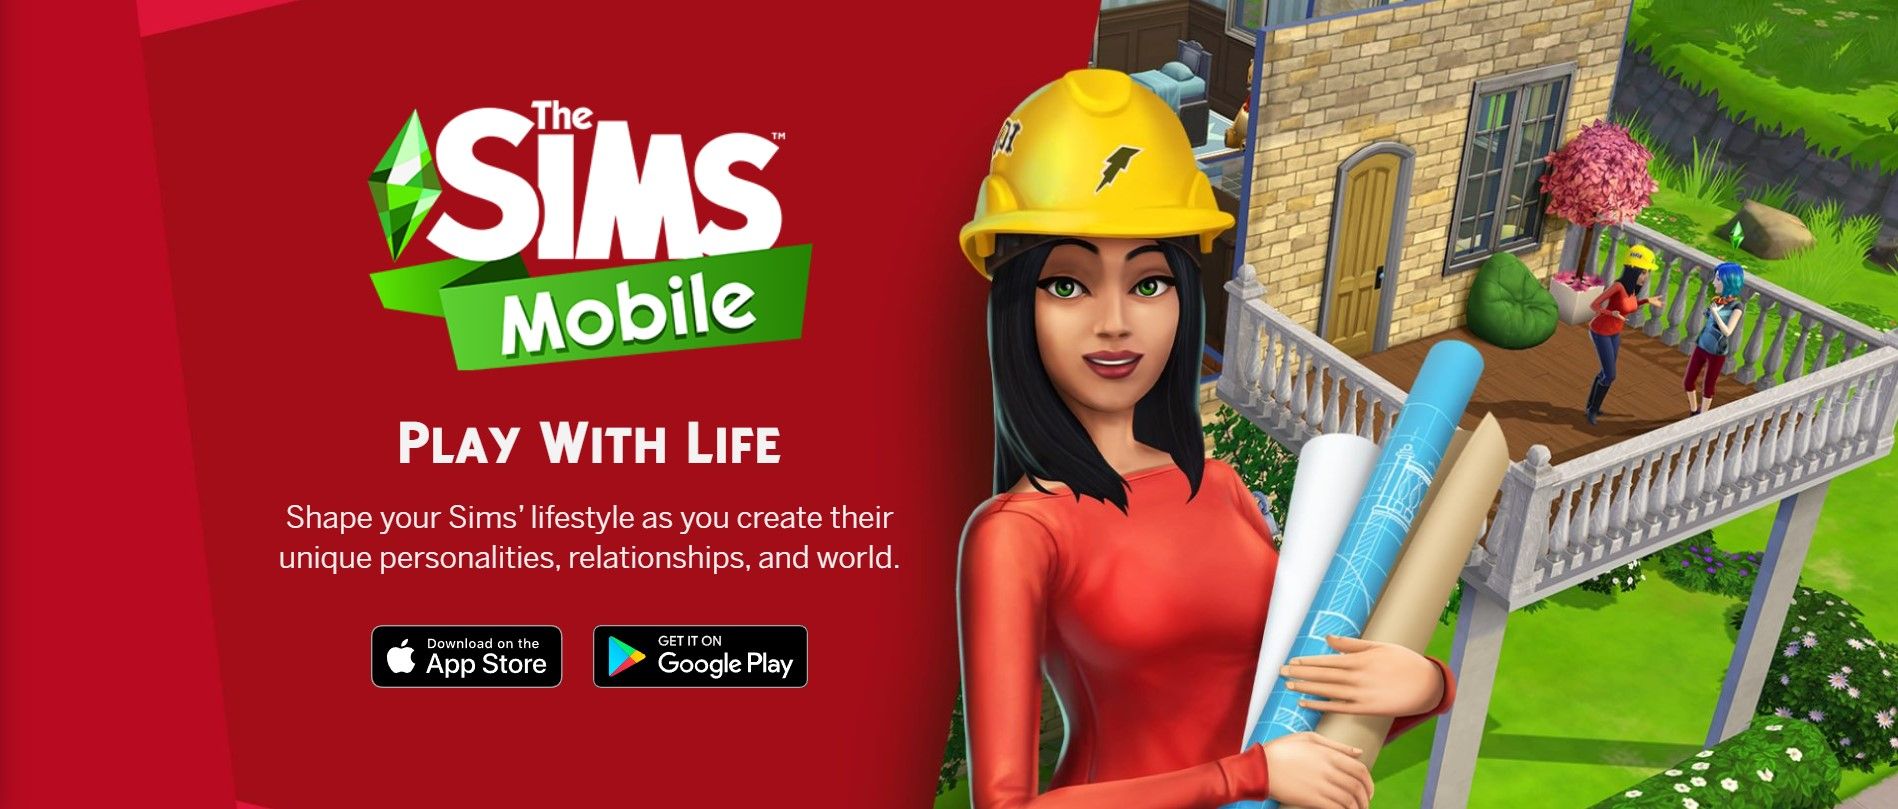 Hình thu nhỏ quảng cáo của Sims Mobile hiển thị một Sim nữ đội mũ cứng đang cầm các bản thiết kế được cuộn lại